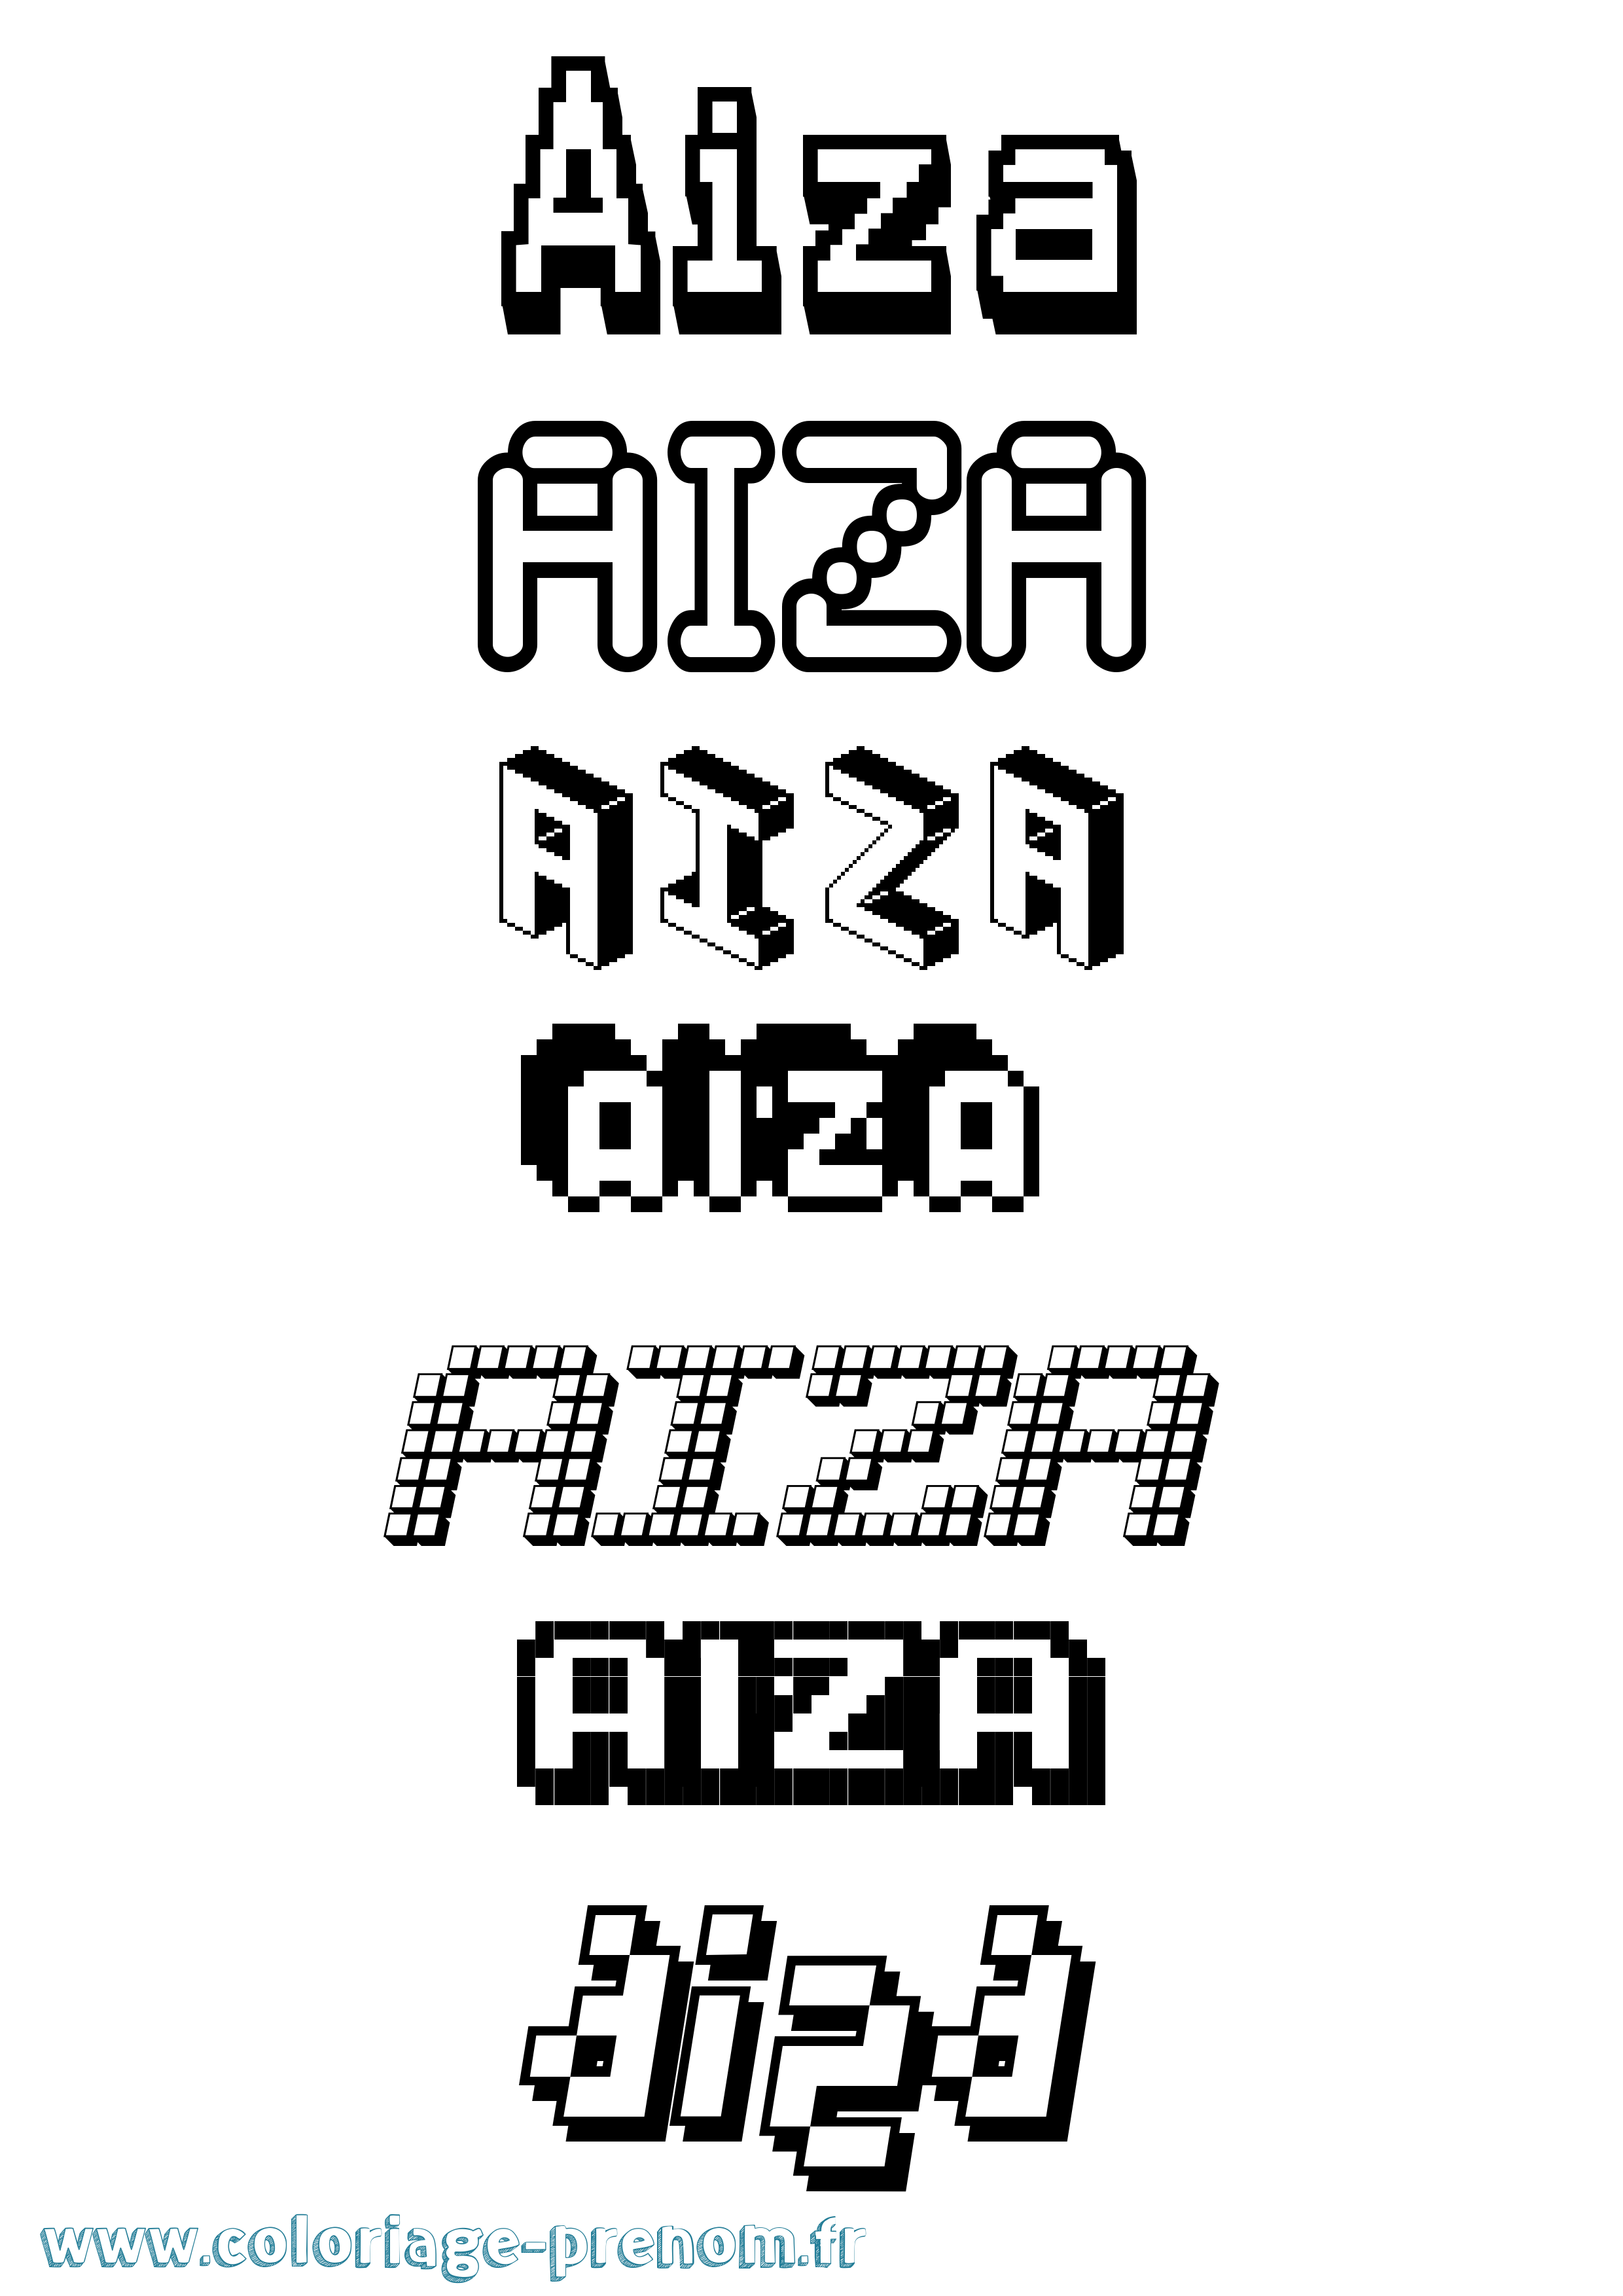 Coloriage prénom Aiza Pixel